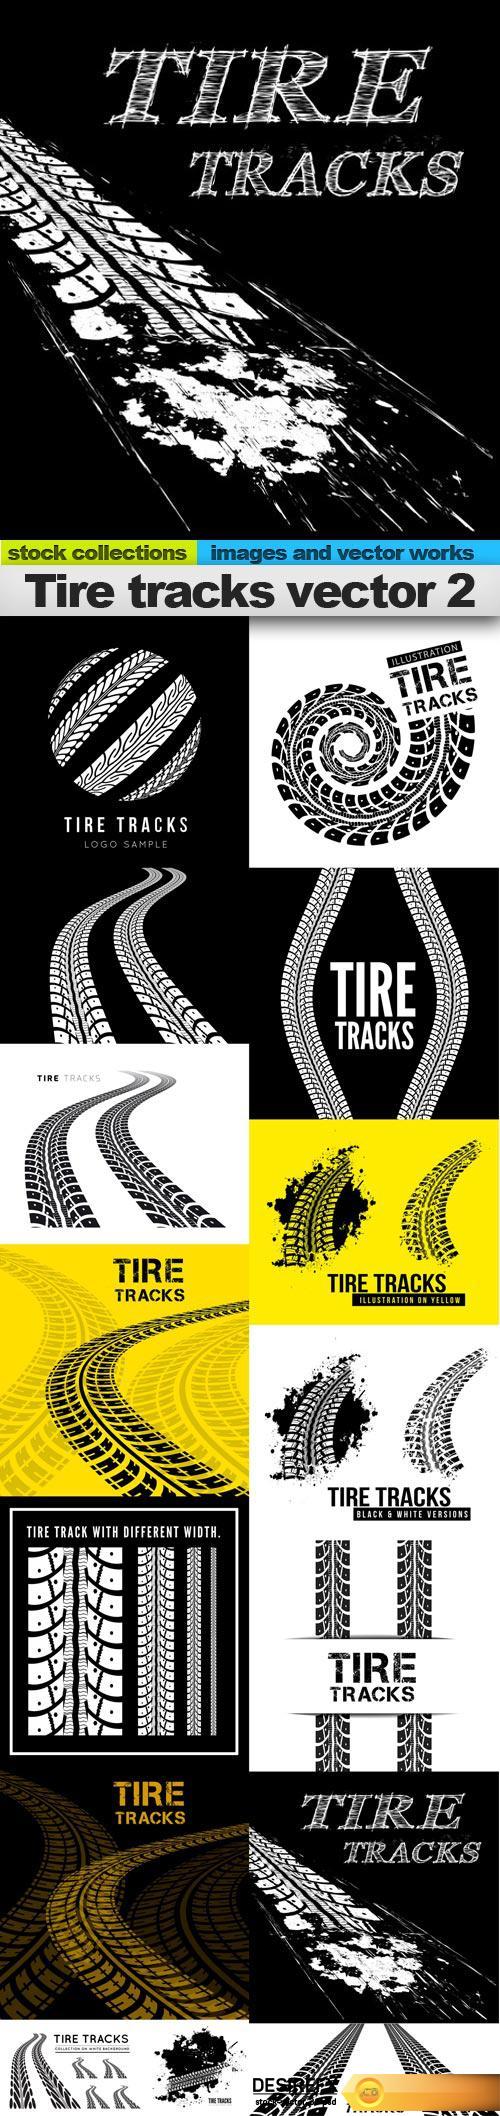 Tire tracks vector 2, 15 x EPS